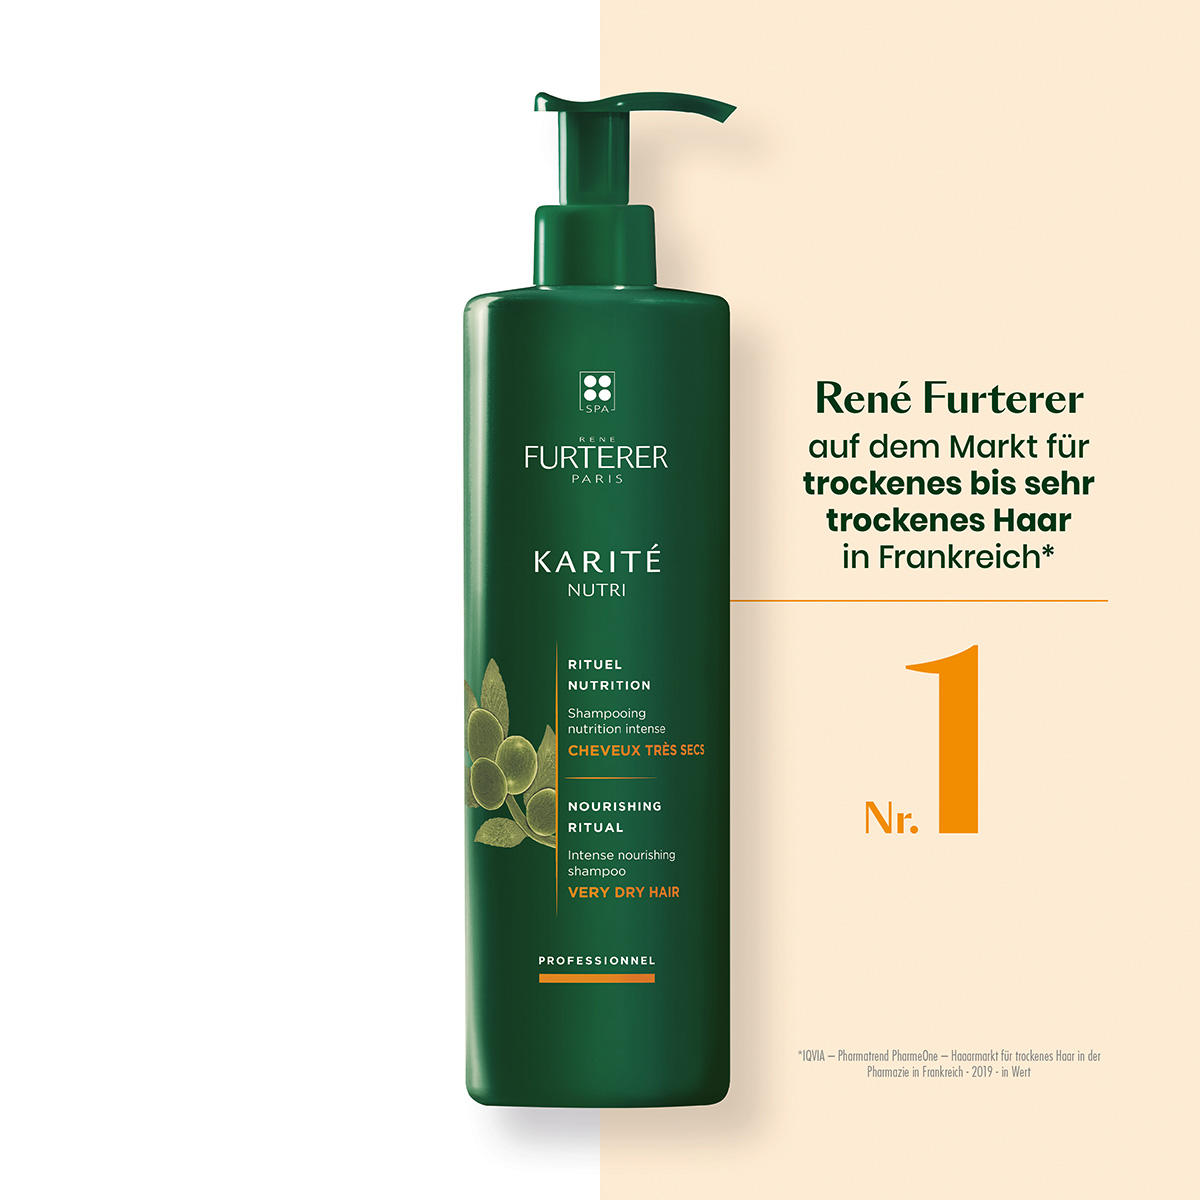 René Furterer Karité Nutri Shampoo nutriente intensivo 600 ml - 10